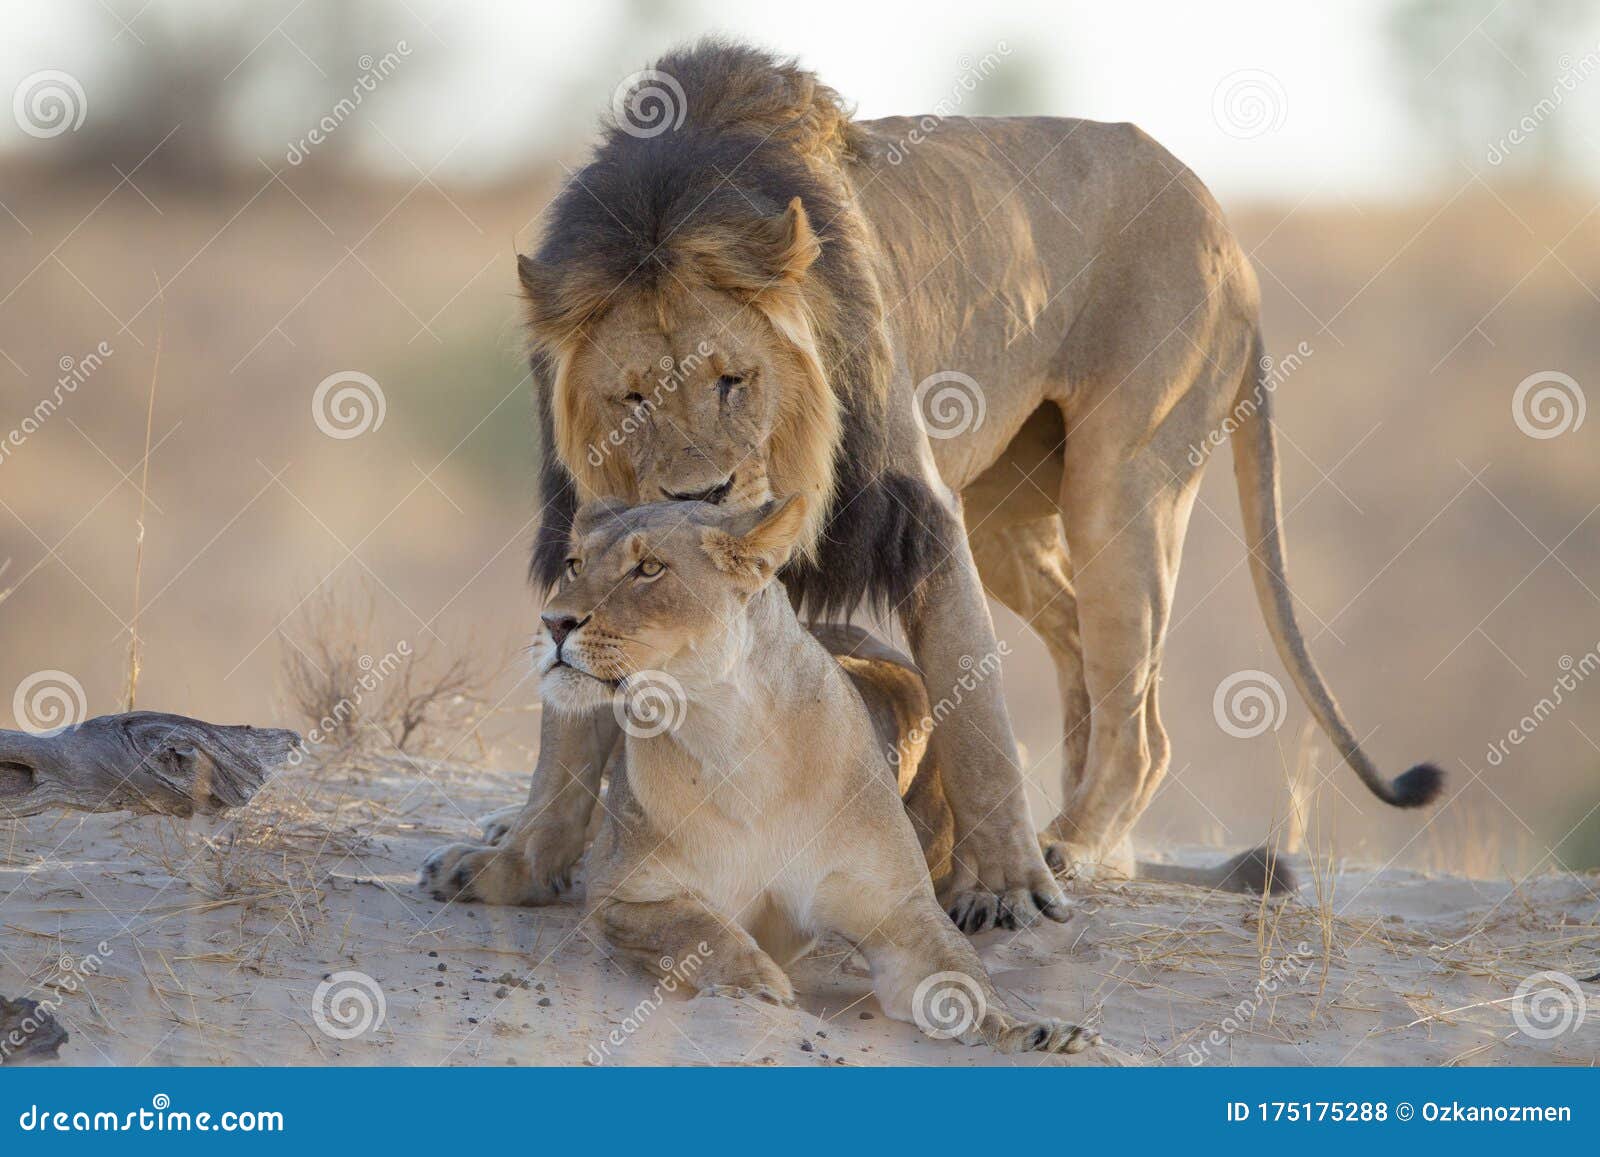 非洲草原上正在交配的狮子：动物世界里的“少儿不宜”_蓝眼睛观世界_新浪博客